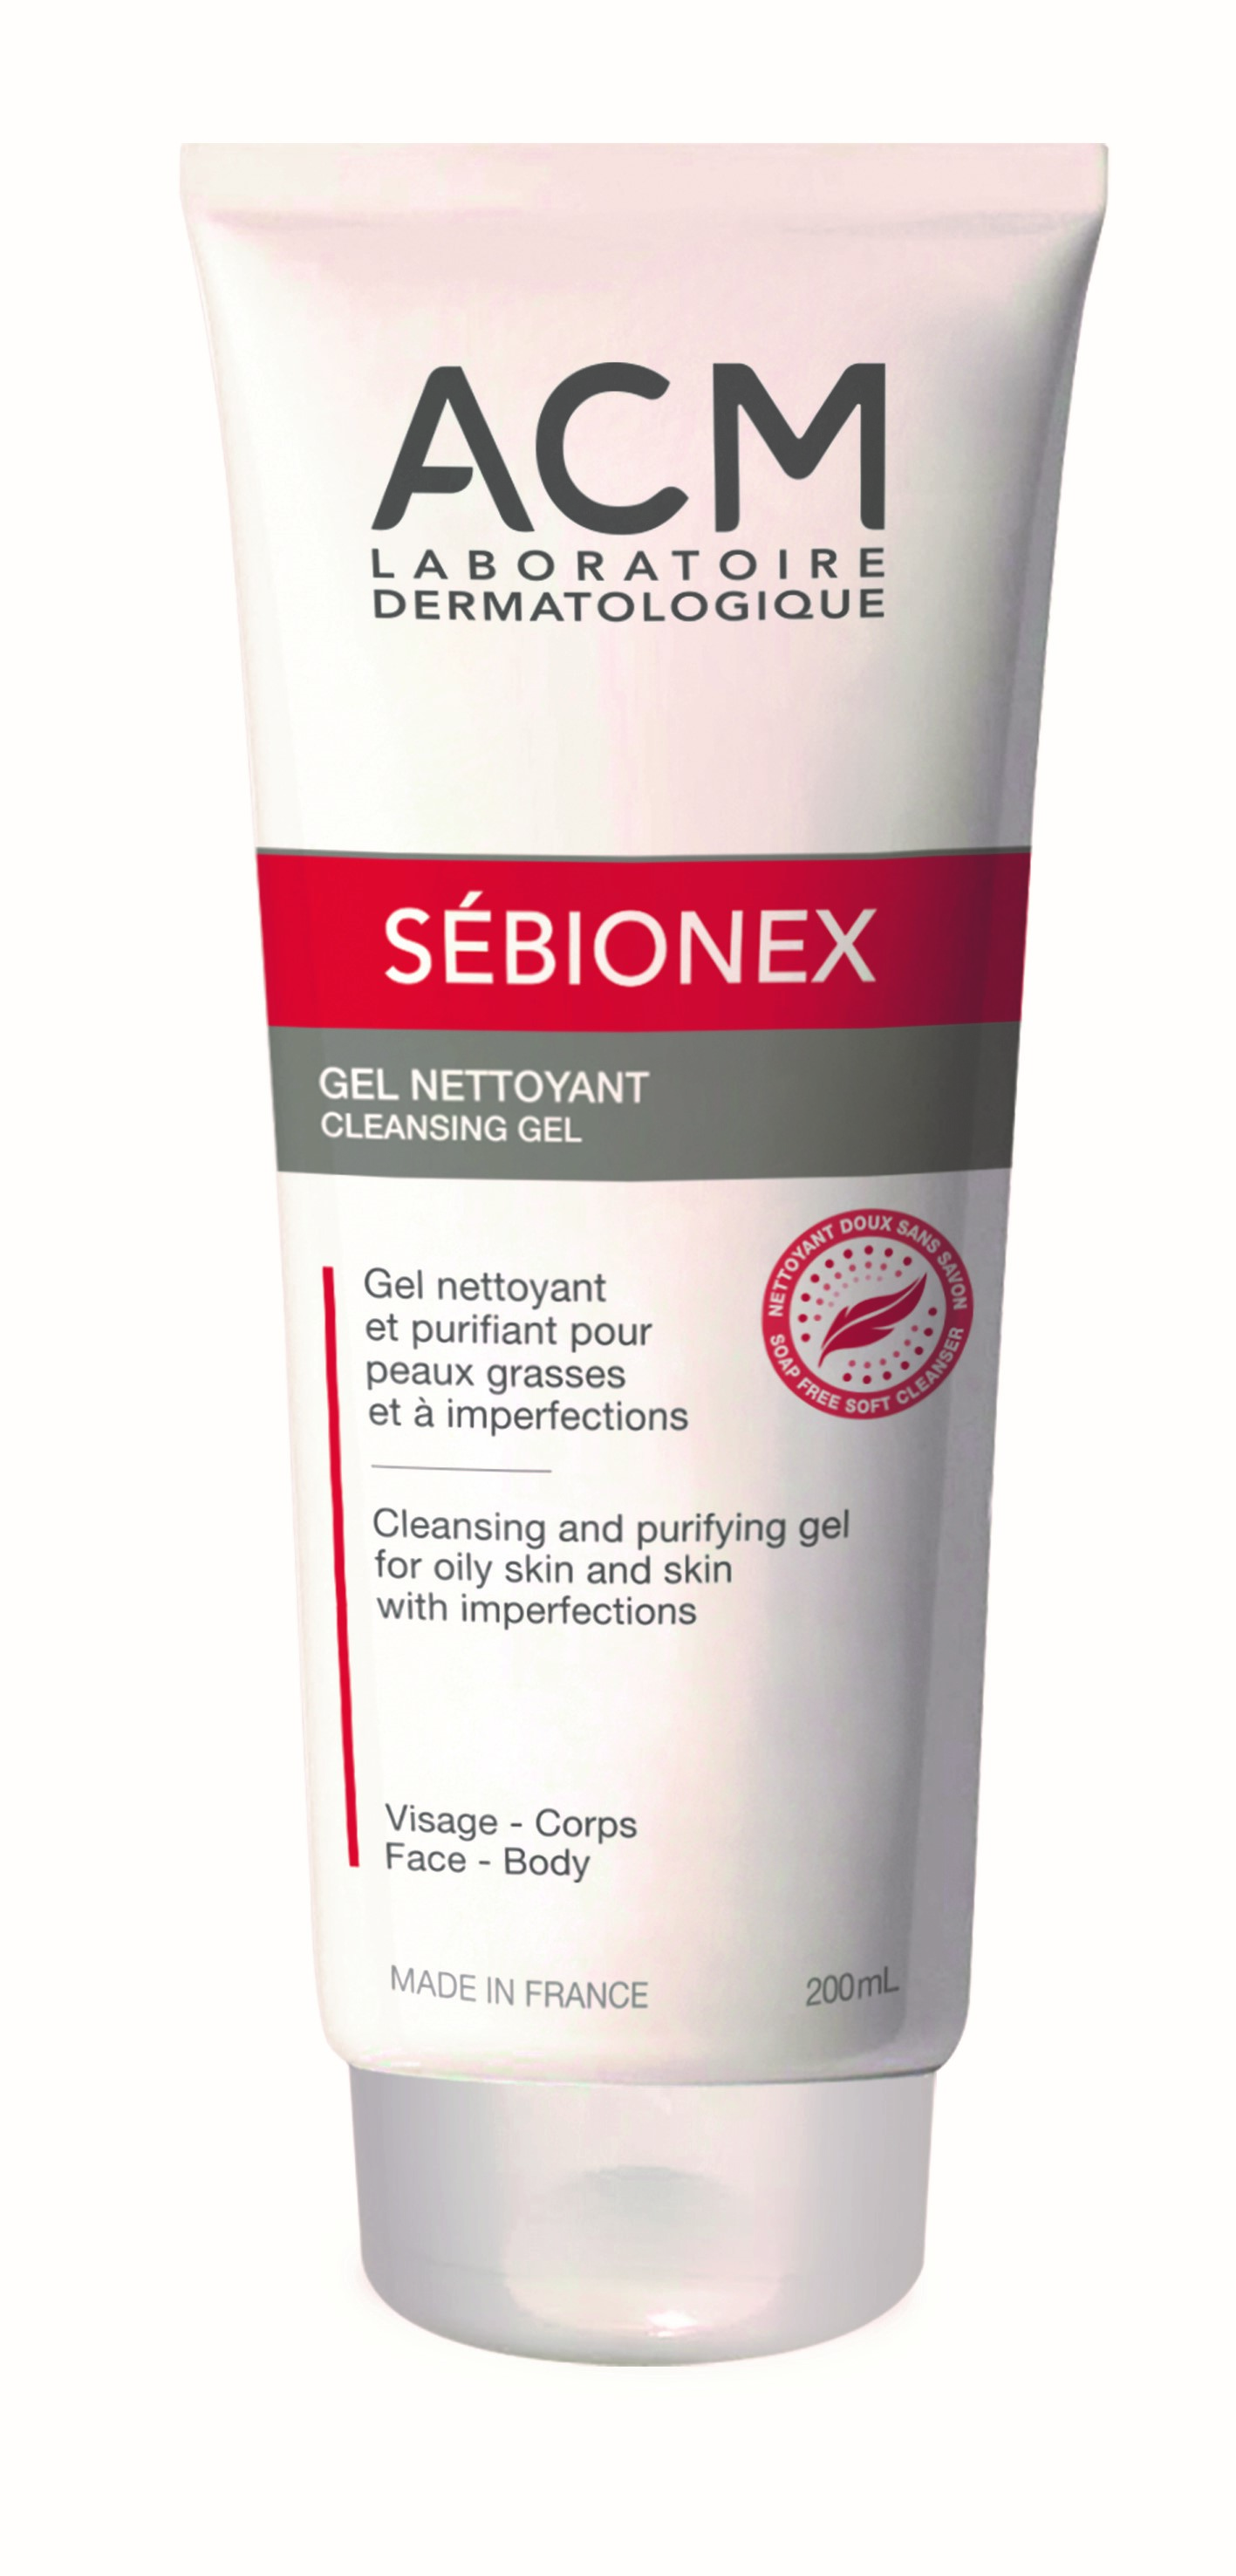 Gel de curățare purifiant Sebionex, 200 ml, ACM